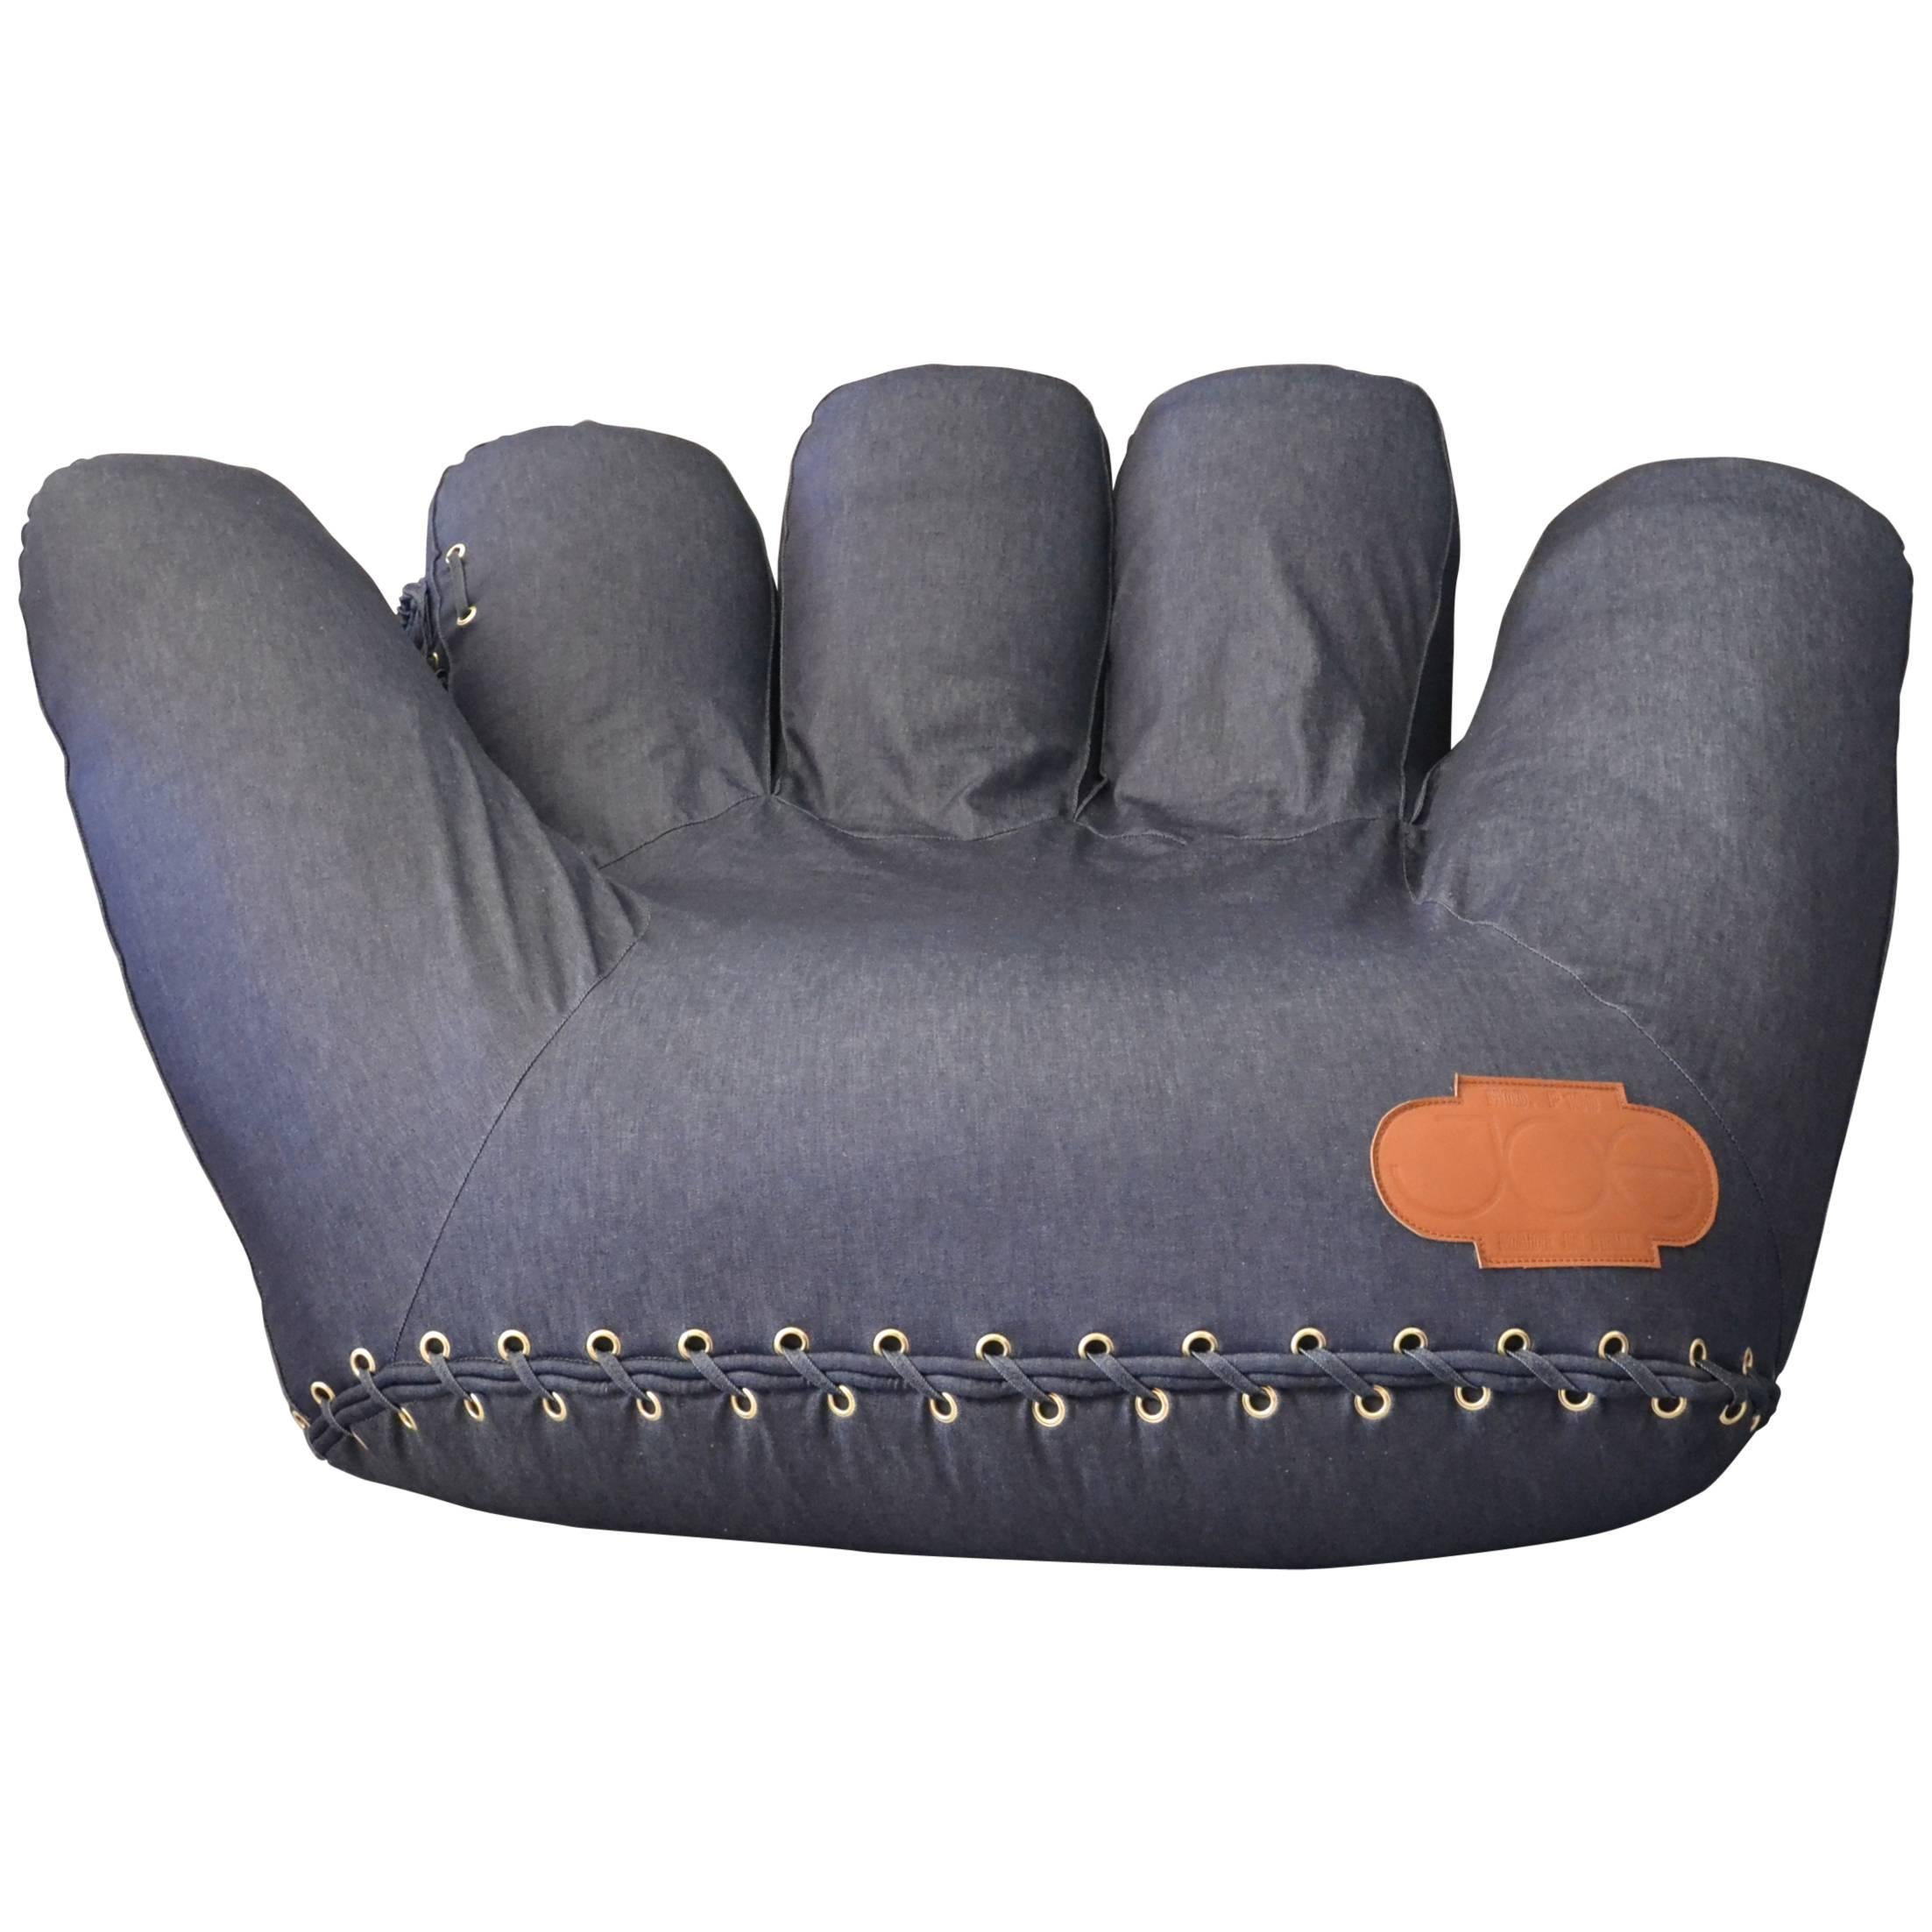 Joe Baseball Glove Lounge Chair in Denim For Sale